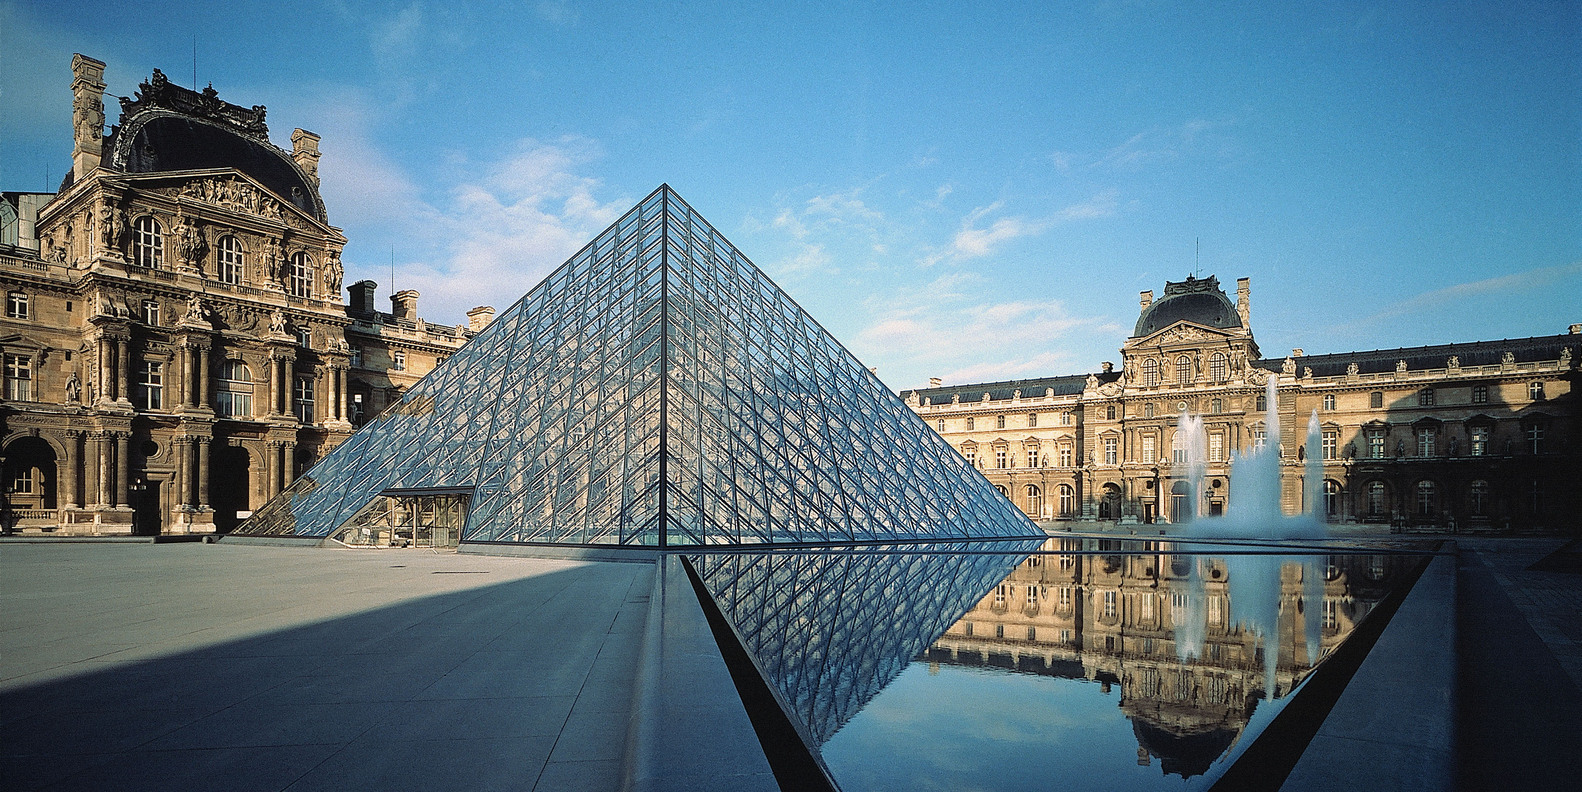 Bảo tàng Lourve được mệnh danh là viên kim cương của bảo tàng Pháp hiện đại